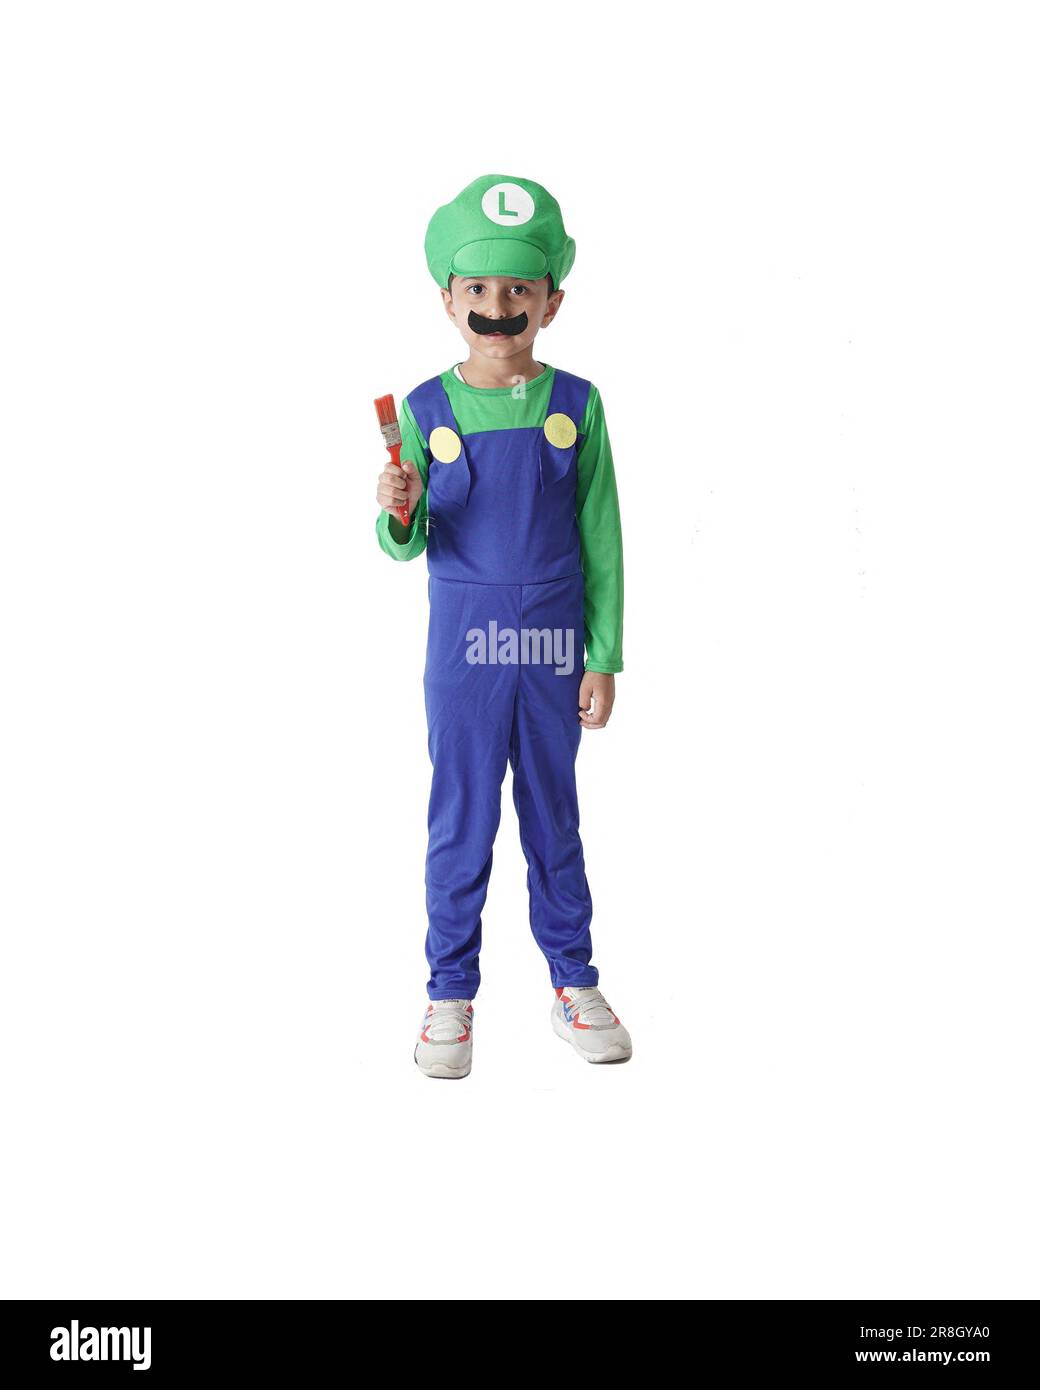 Super Mario Bros Kinderfoto, ein Kind trägt ein Luigi-Kostüm und hält einen Pinsel isoliert auf weißem Hintergrund. Stockfoto